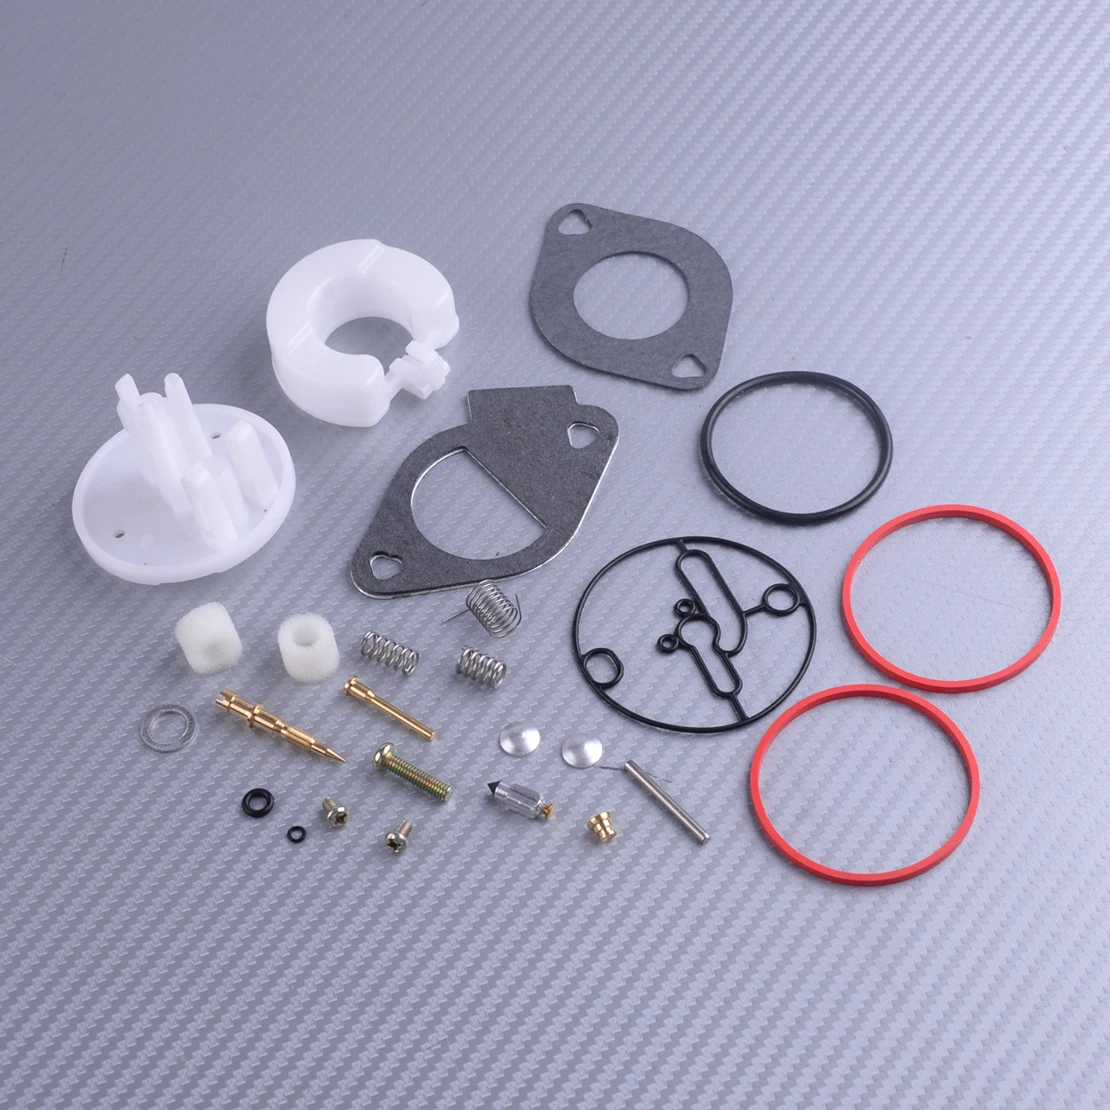 LETAOSK Carburetor Repair Kit Fit for Briggs Stratton 14hp 18hp 31E707 31P777